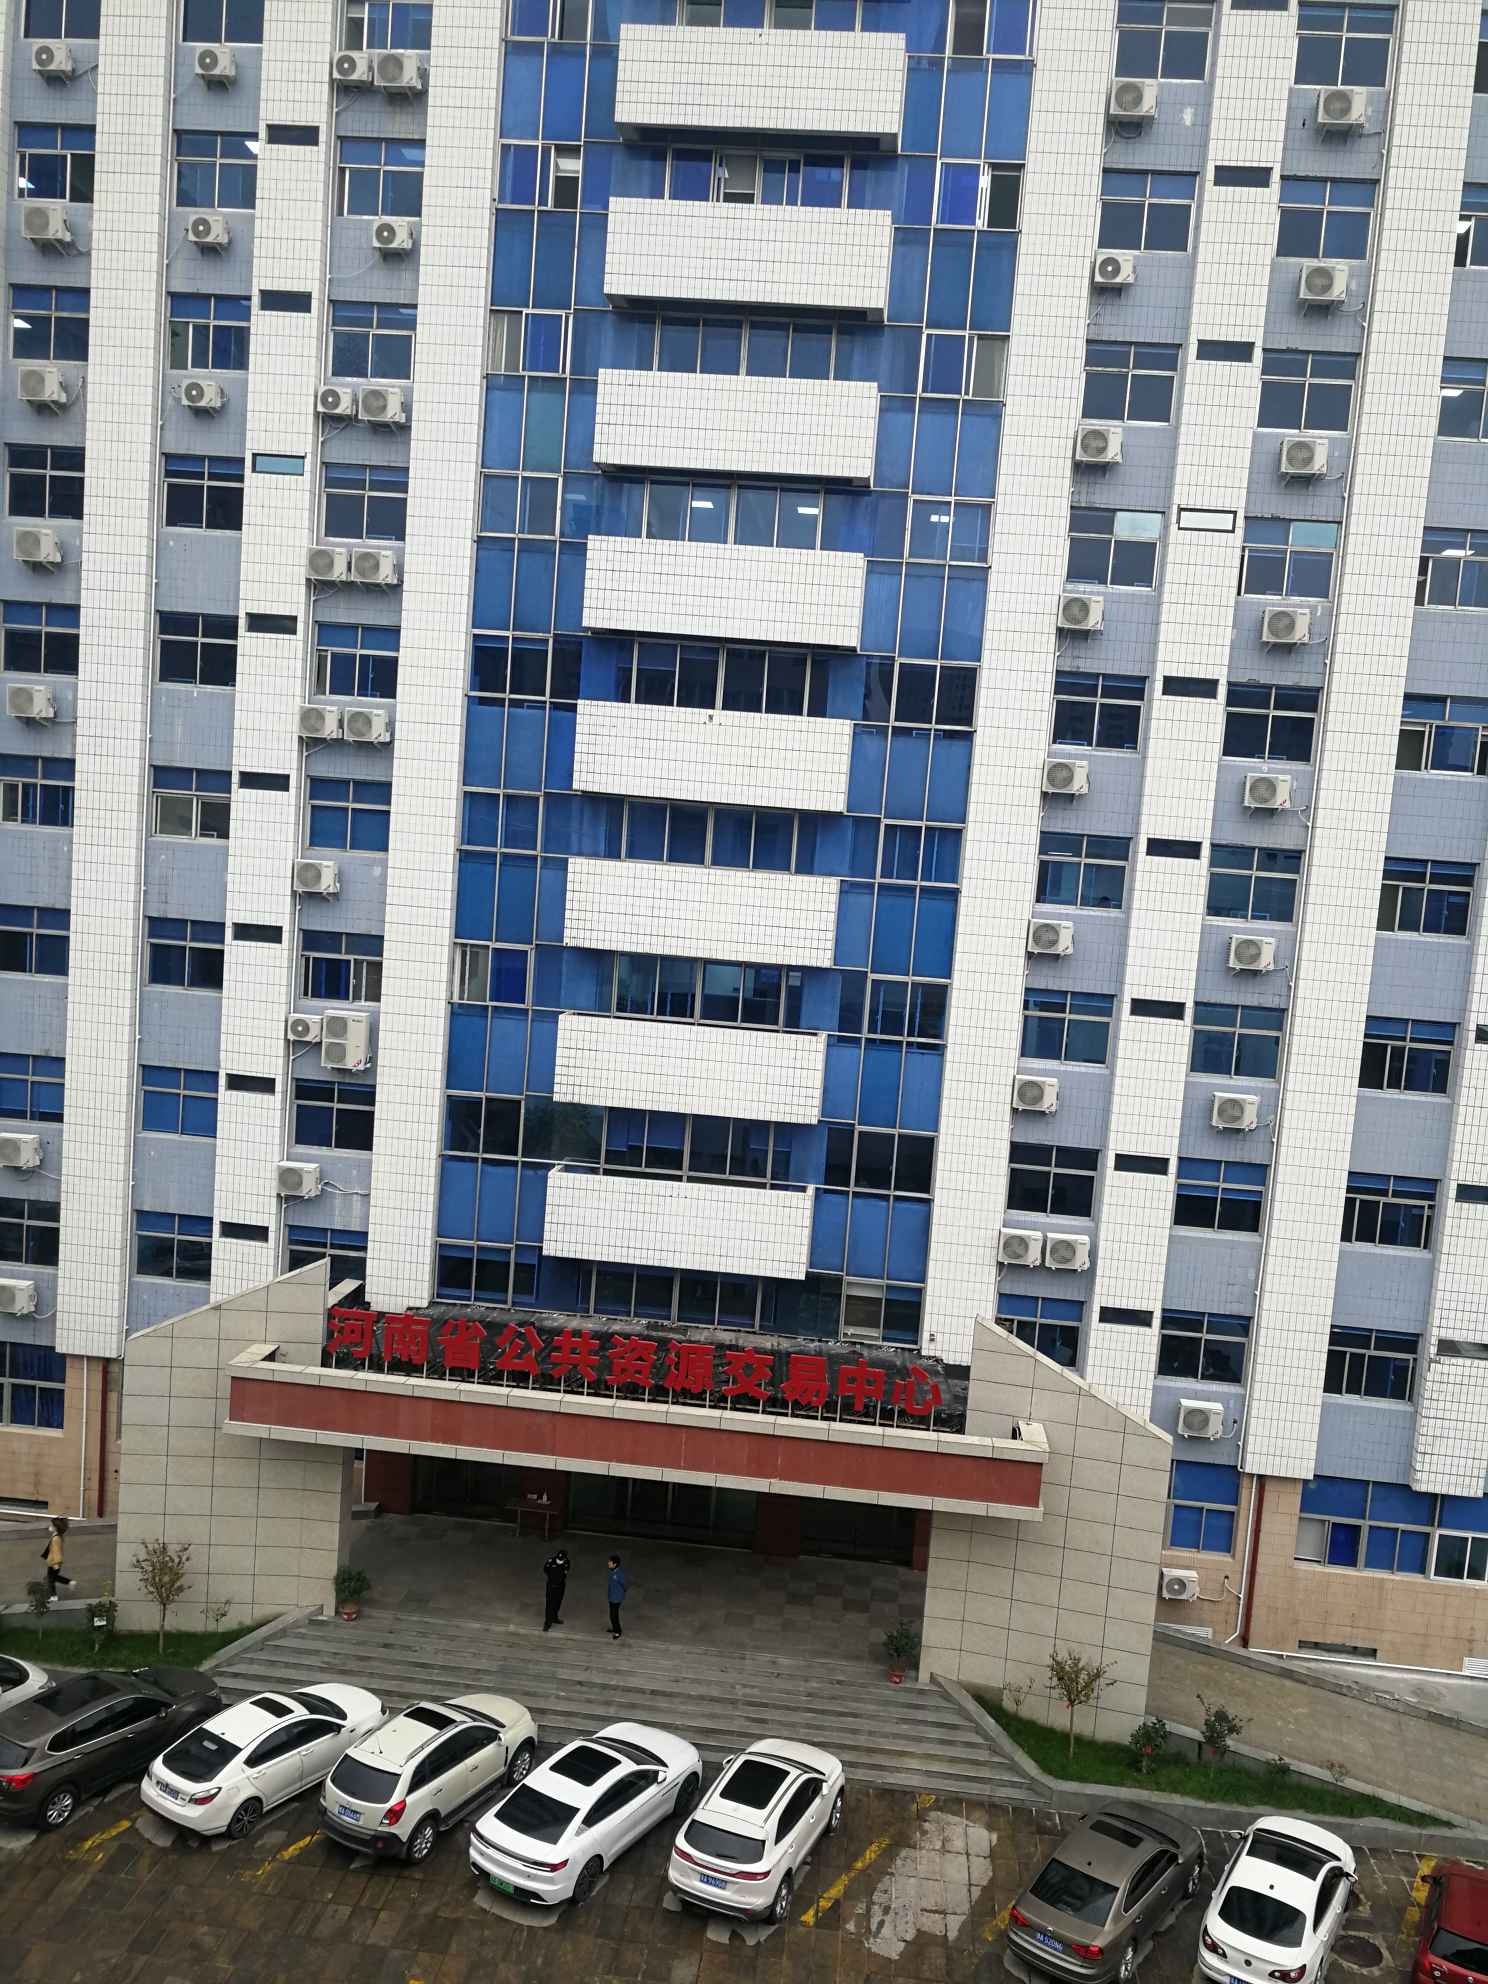 河南省公共资源交易中心